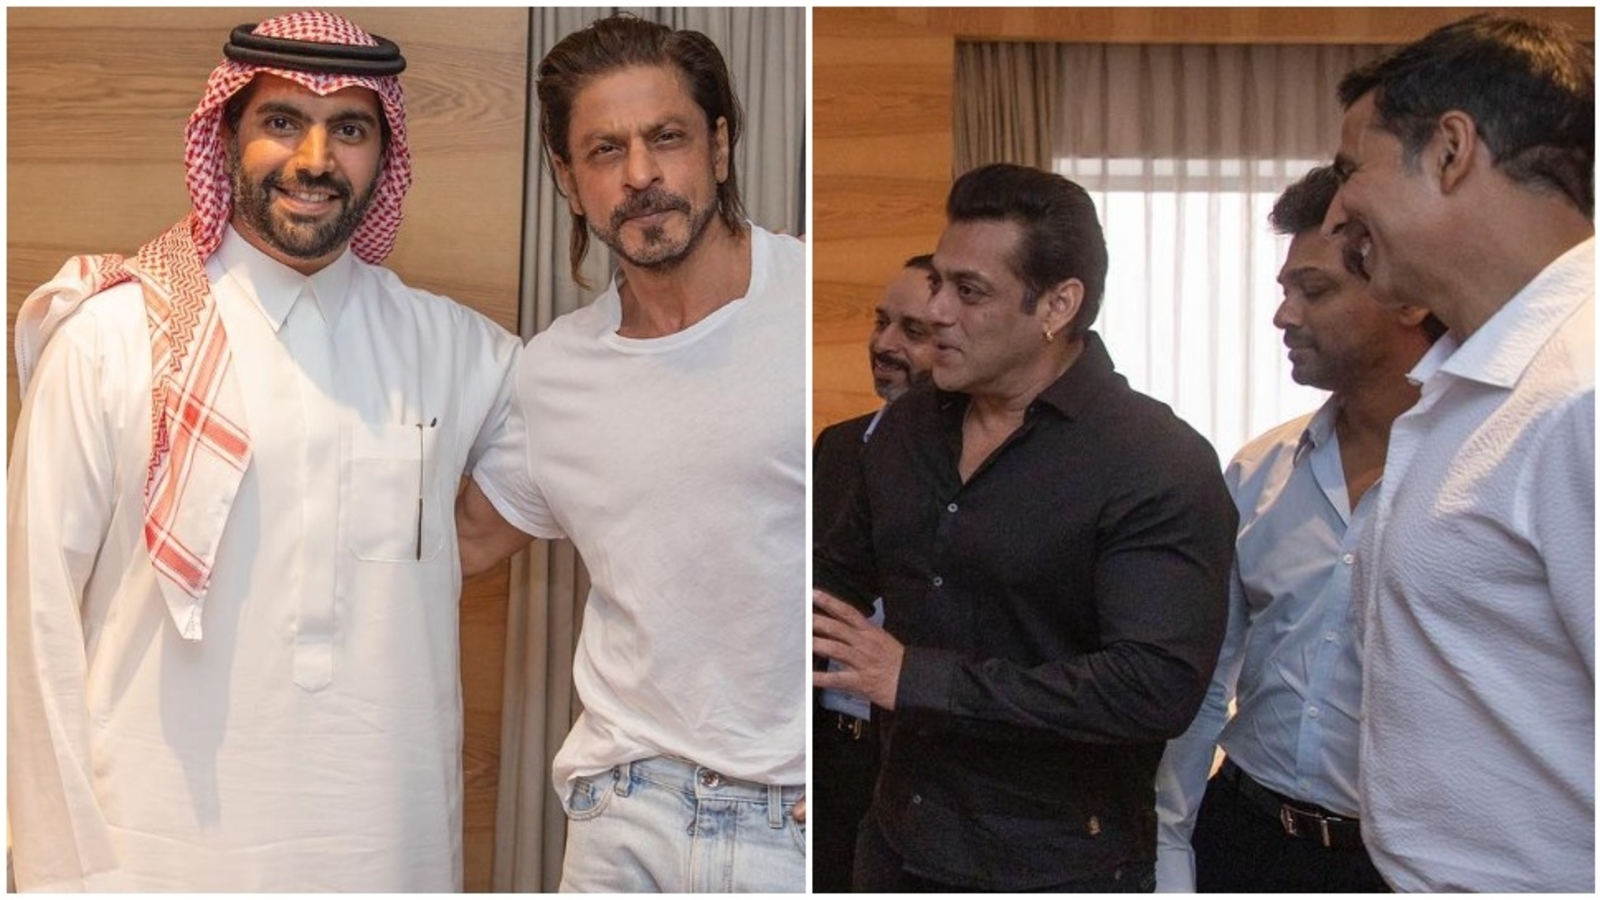 Shah Rukh Khan posa con el Ministro de Arabia Saudita en una foto inédita, también vista por Salman Khan y Akshay Kumar.  ver aquí |  Bollywood